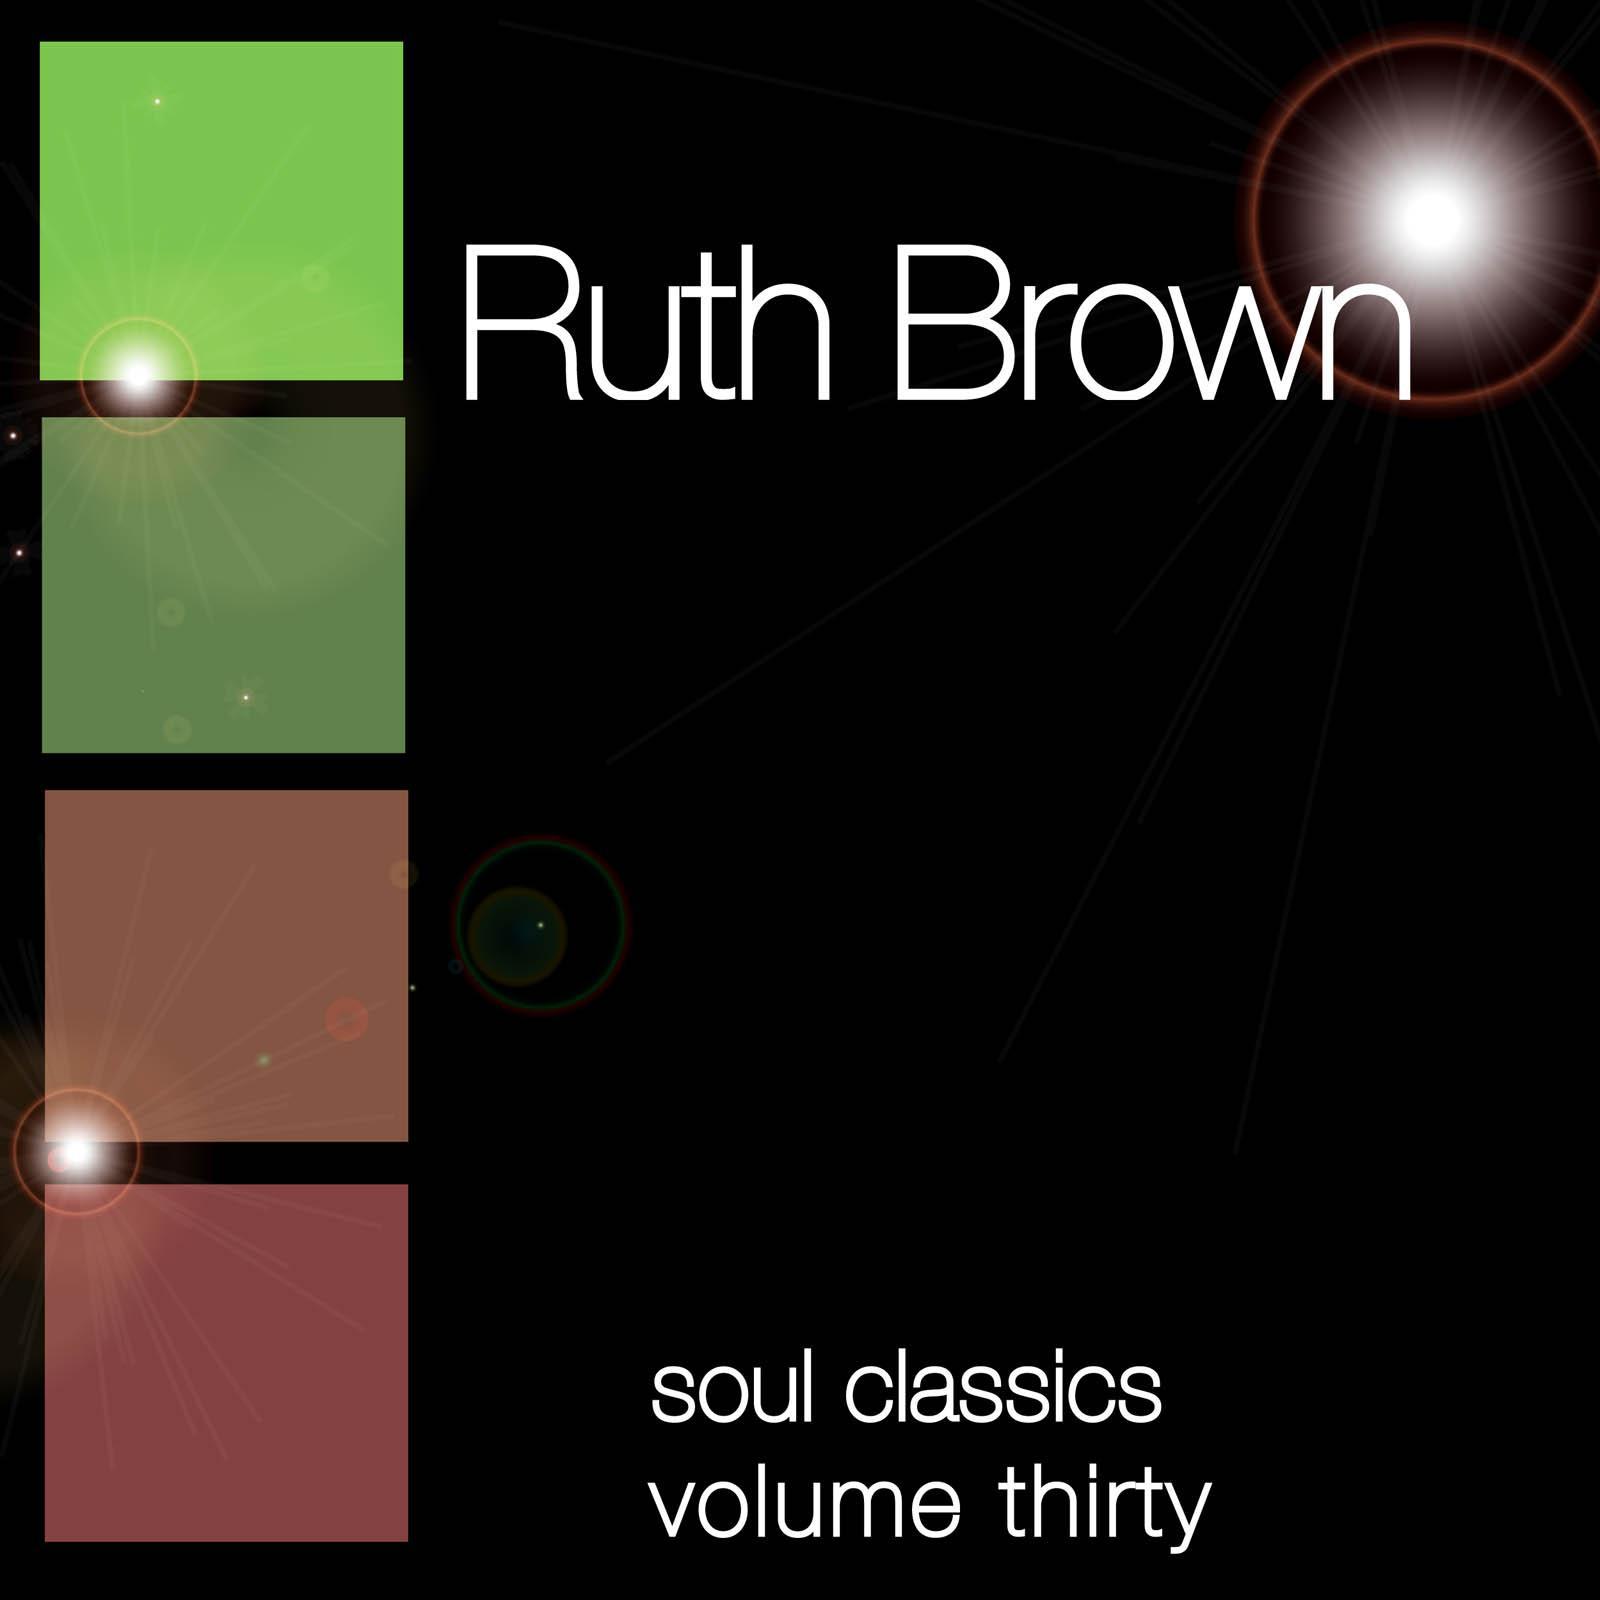 Soul Classics-Ruth Brown-Vol. 30